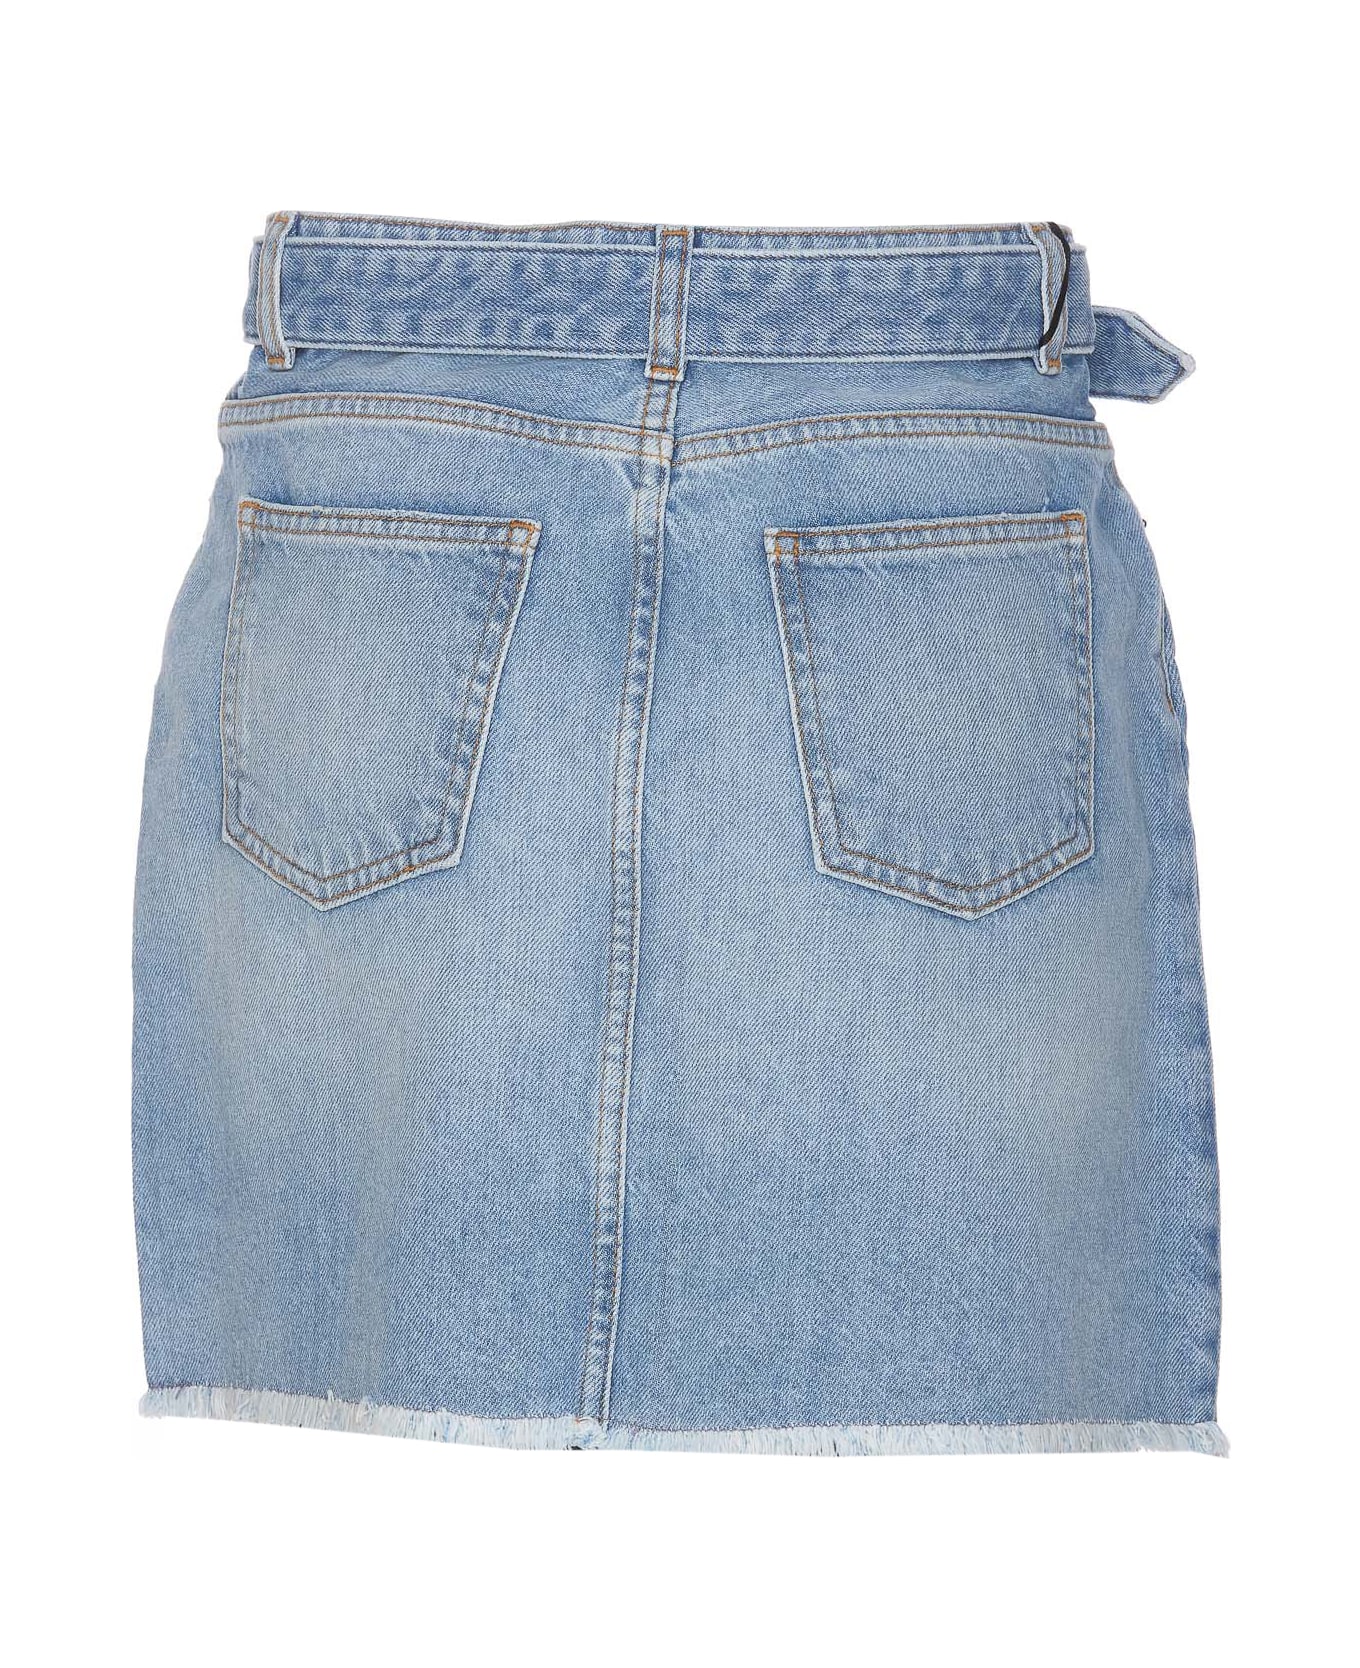 TwinSet Denim Mini Skirt With Oval T Belt - Blue